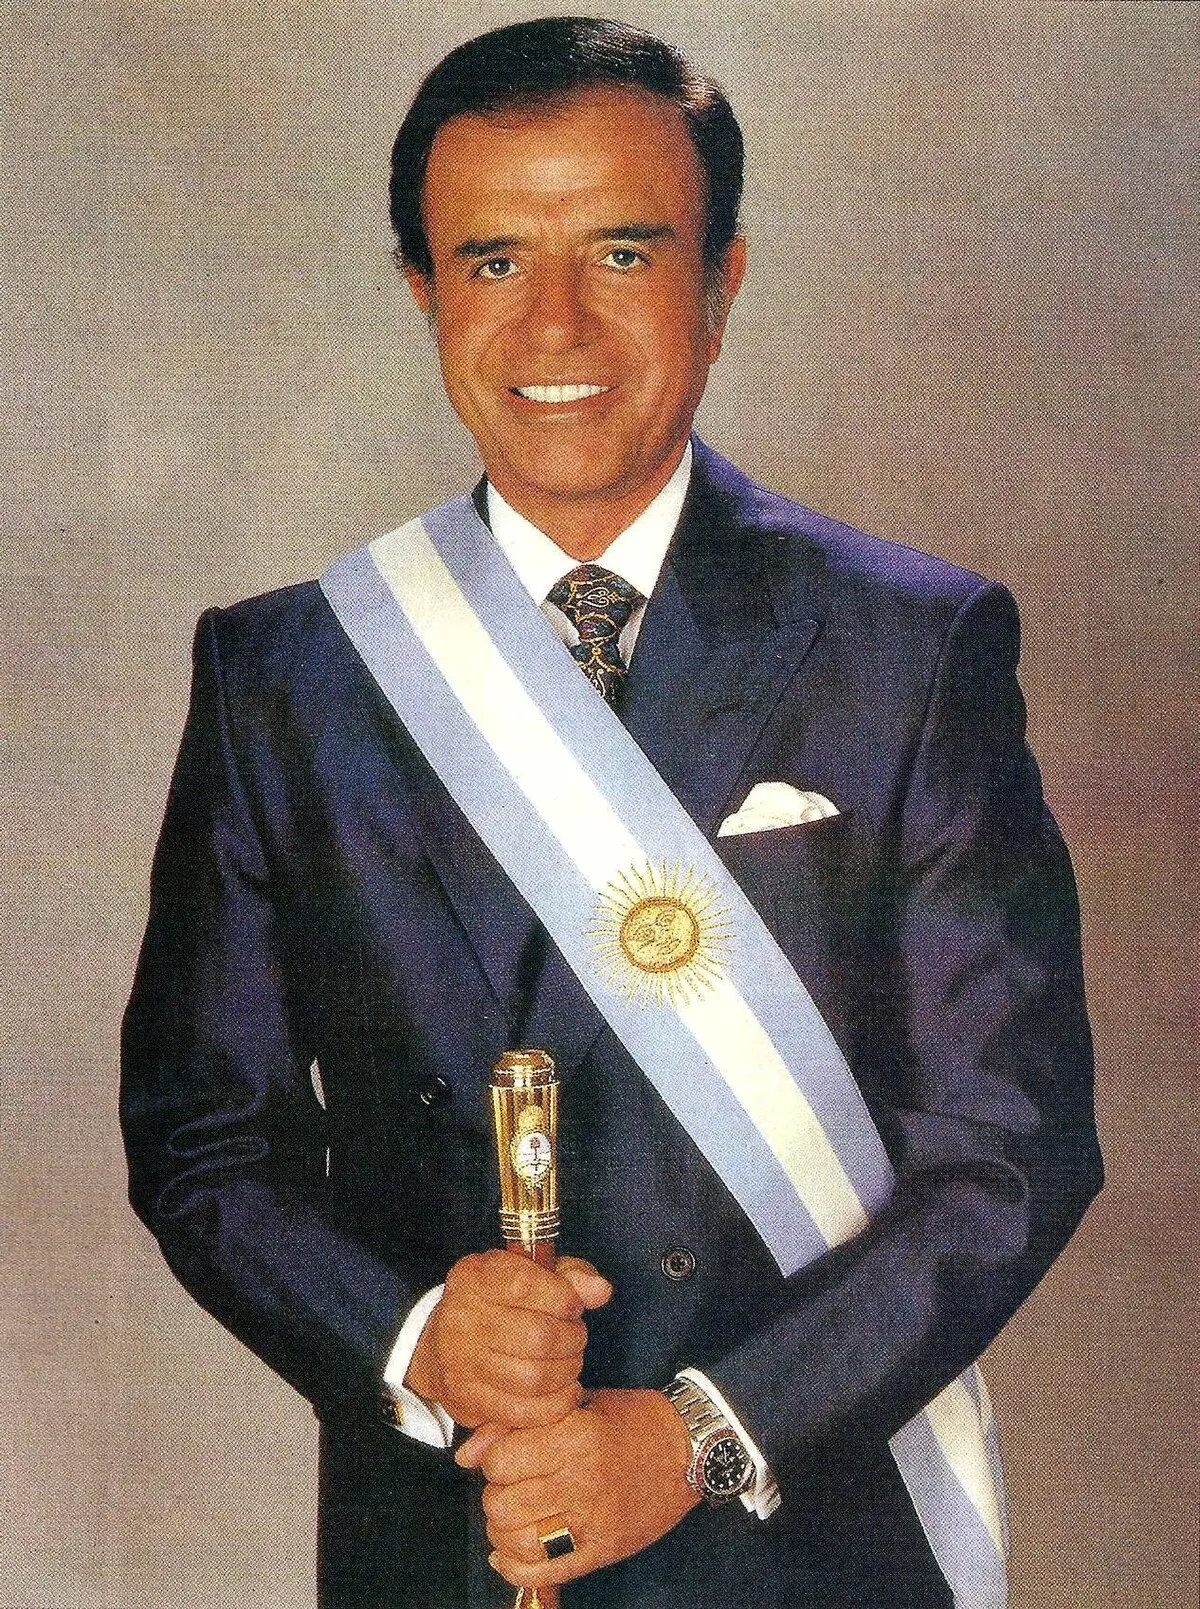 menem ferrari - Quién era presidente en 1989 en Argentina